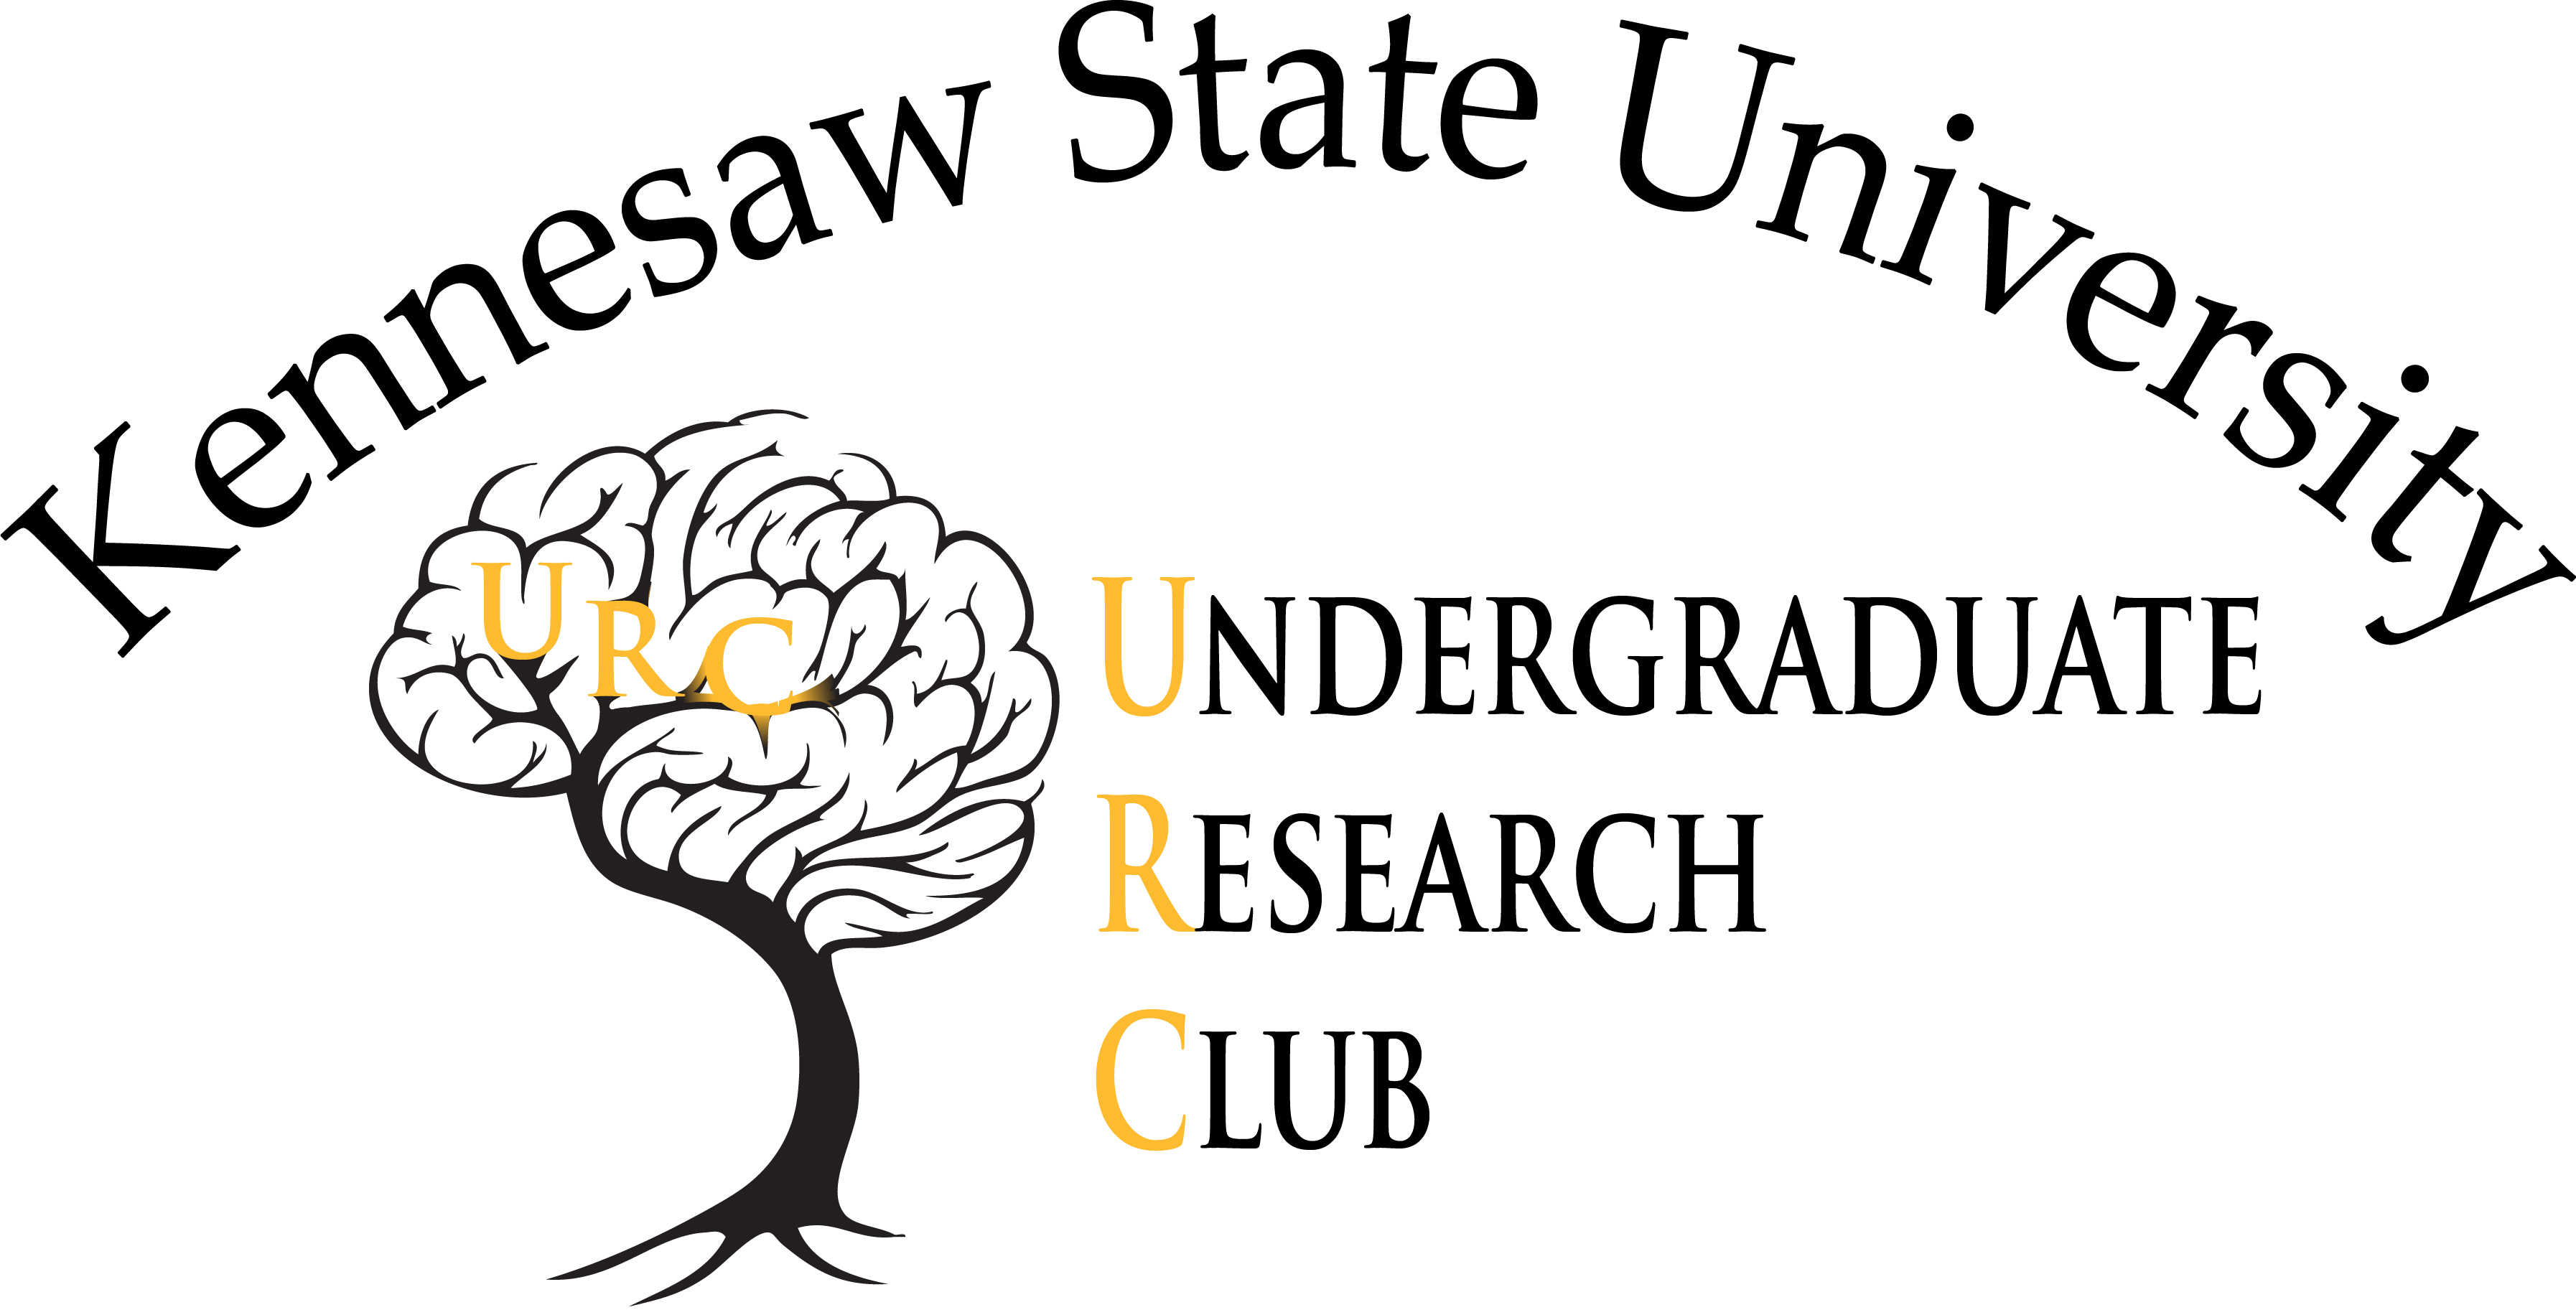 Undergraduate Research Club